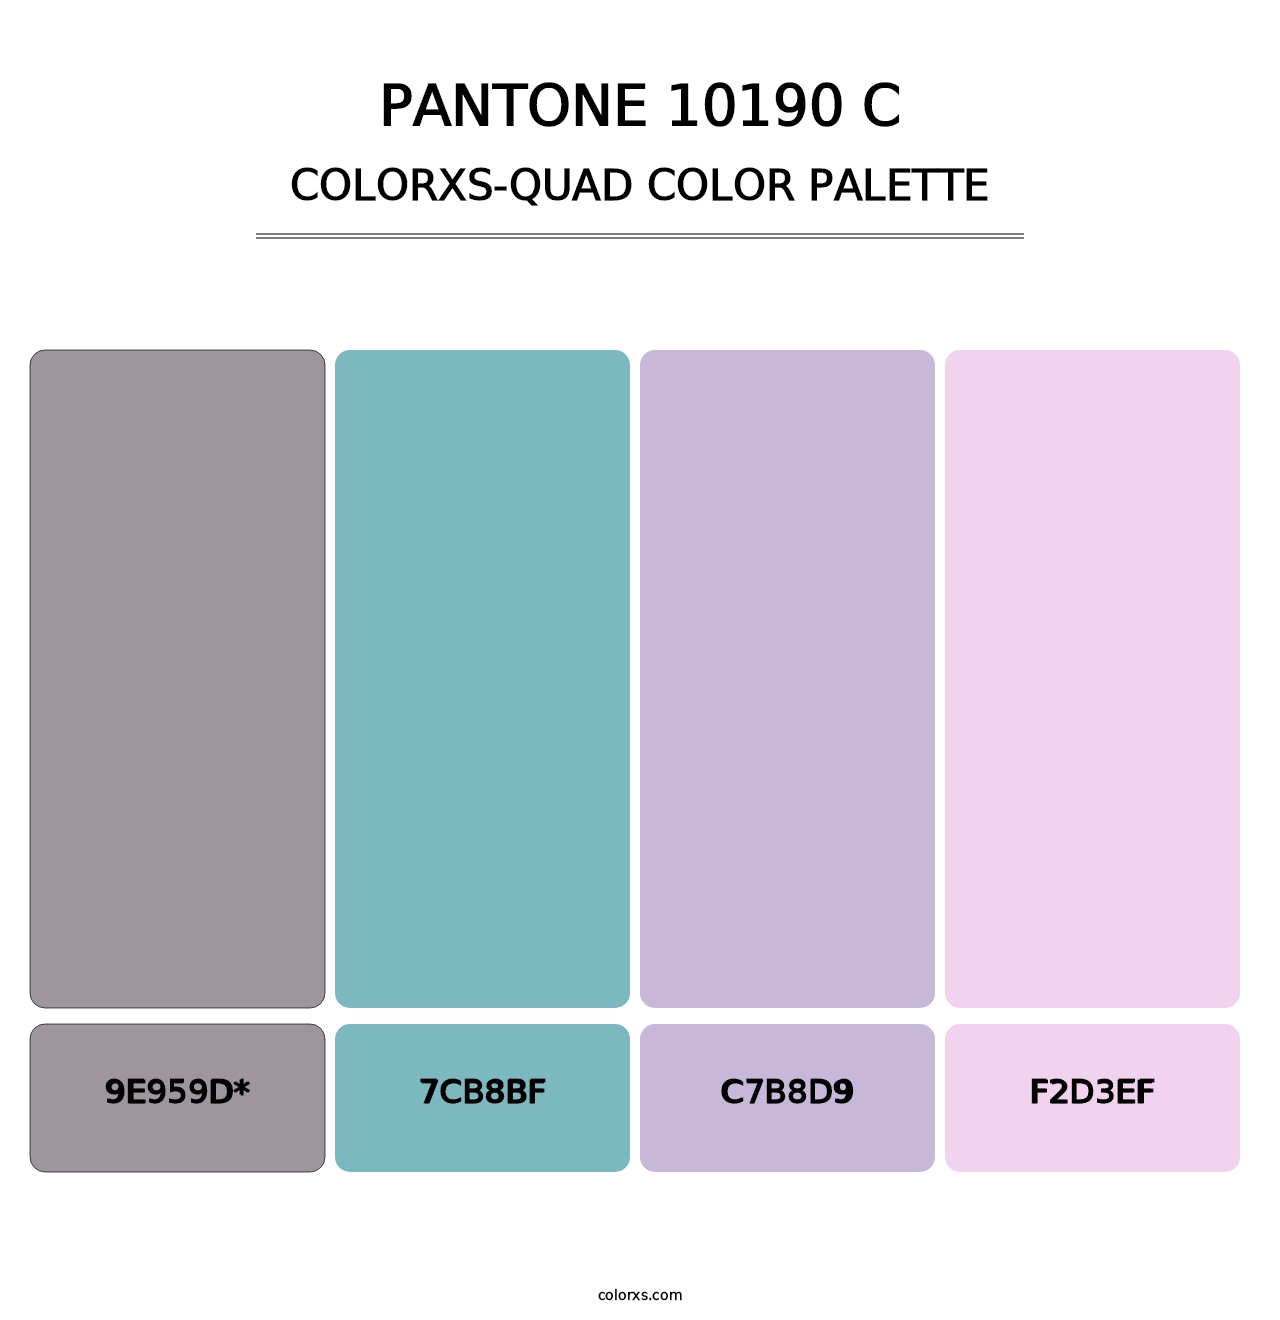 PANTONE 10190 C - Colorxs Quad Palette